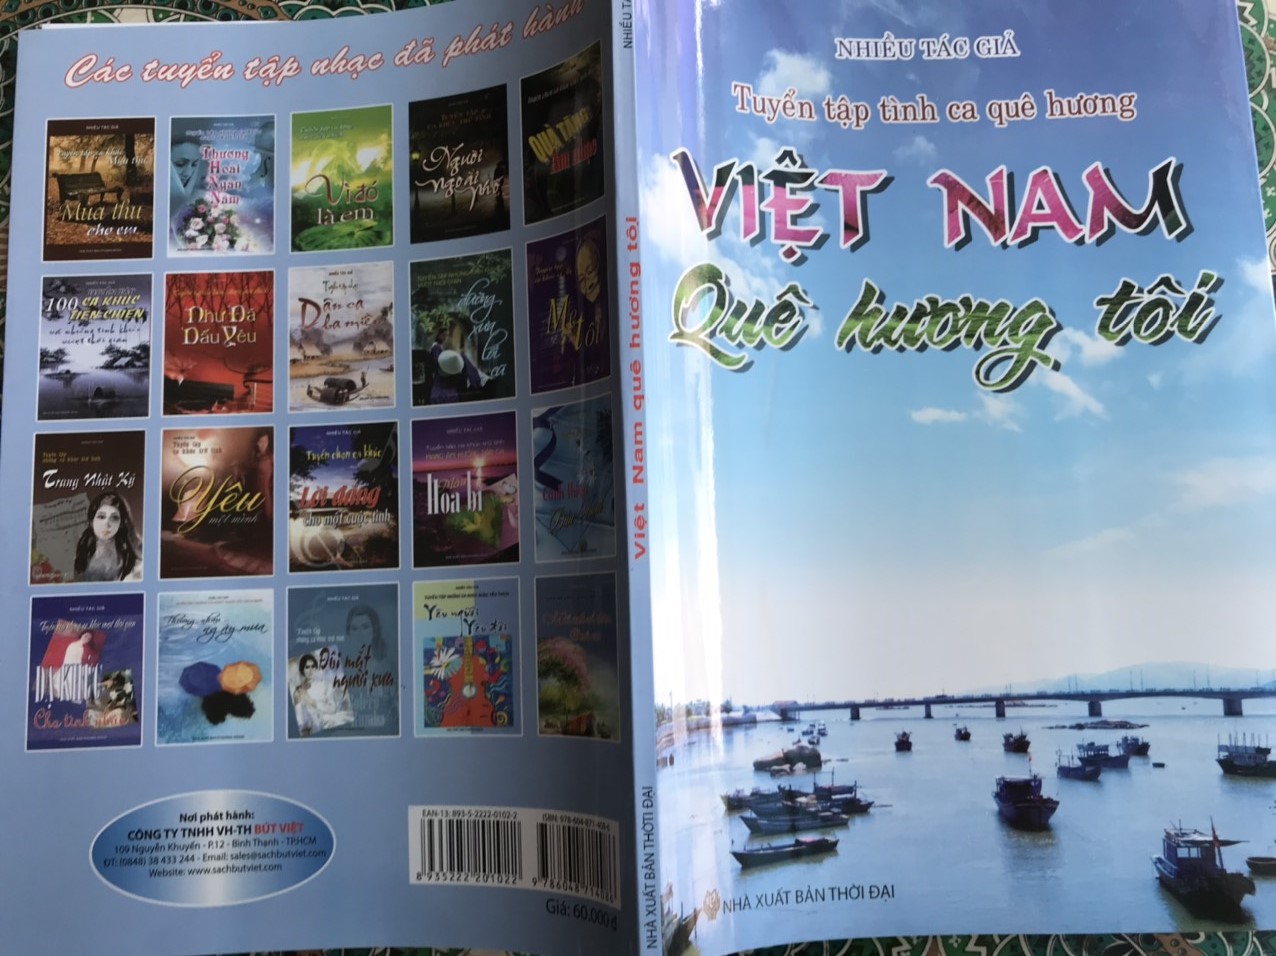 Tuyển Tập Tình Ca Quê Hương - Việt Nam Quê Hương Tôi